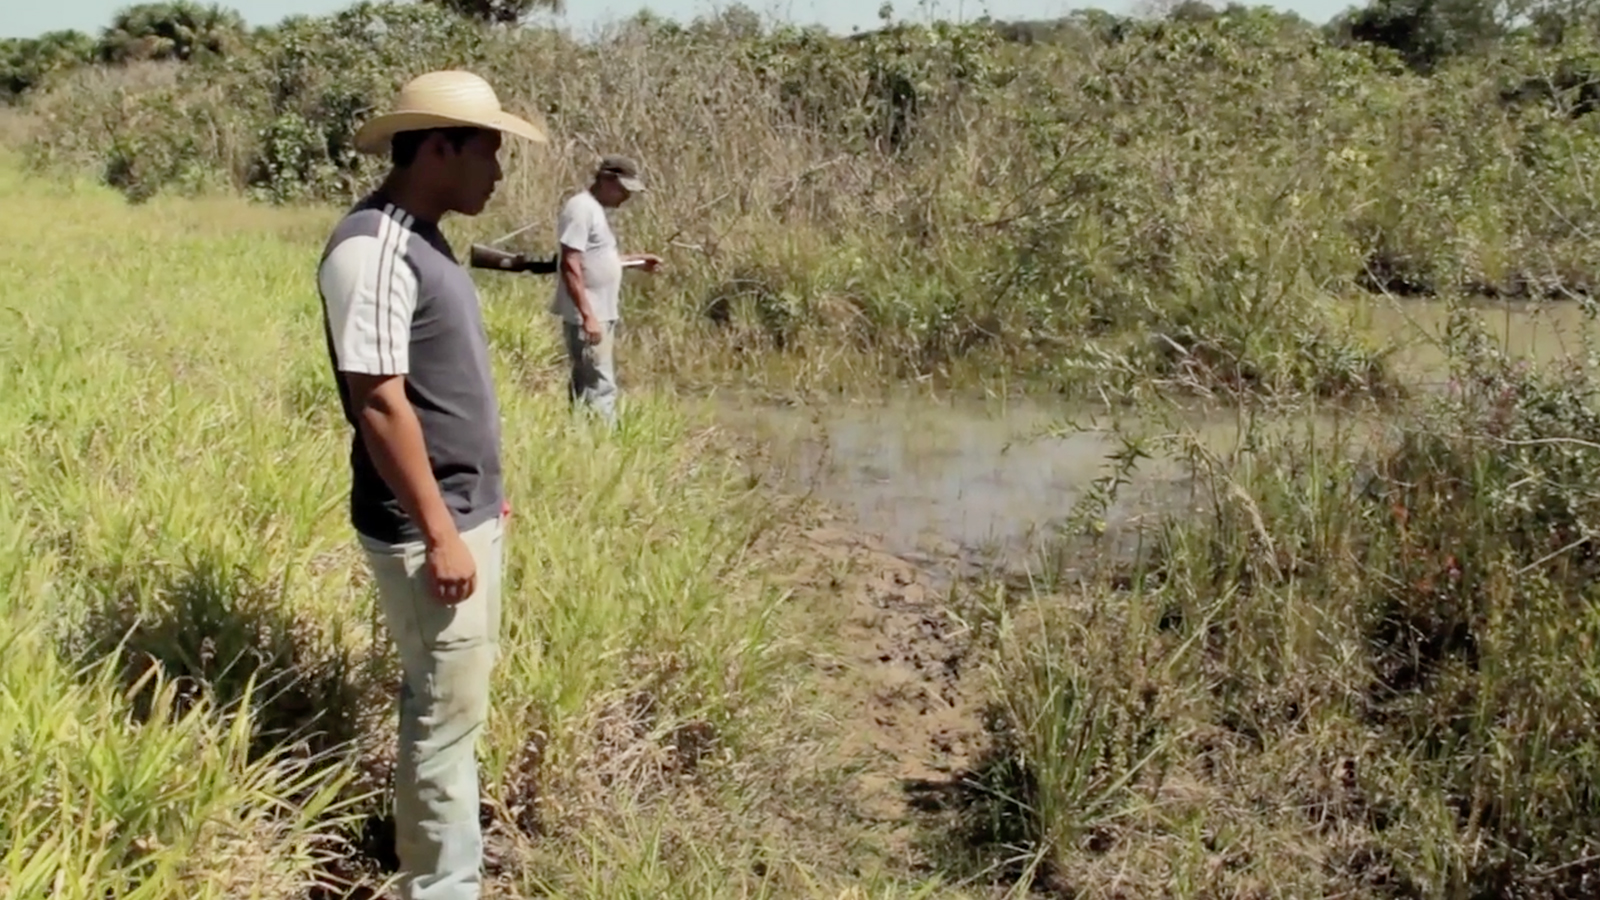 De rivieren die Xingu binnenstromen vergiftigen inheemse volkeren